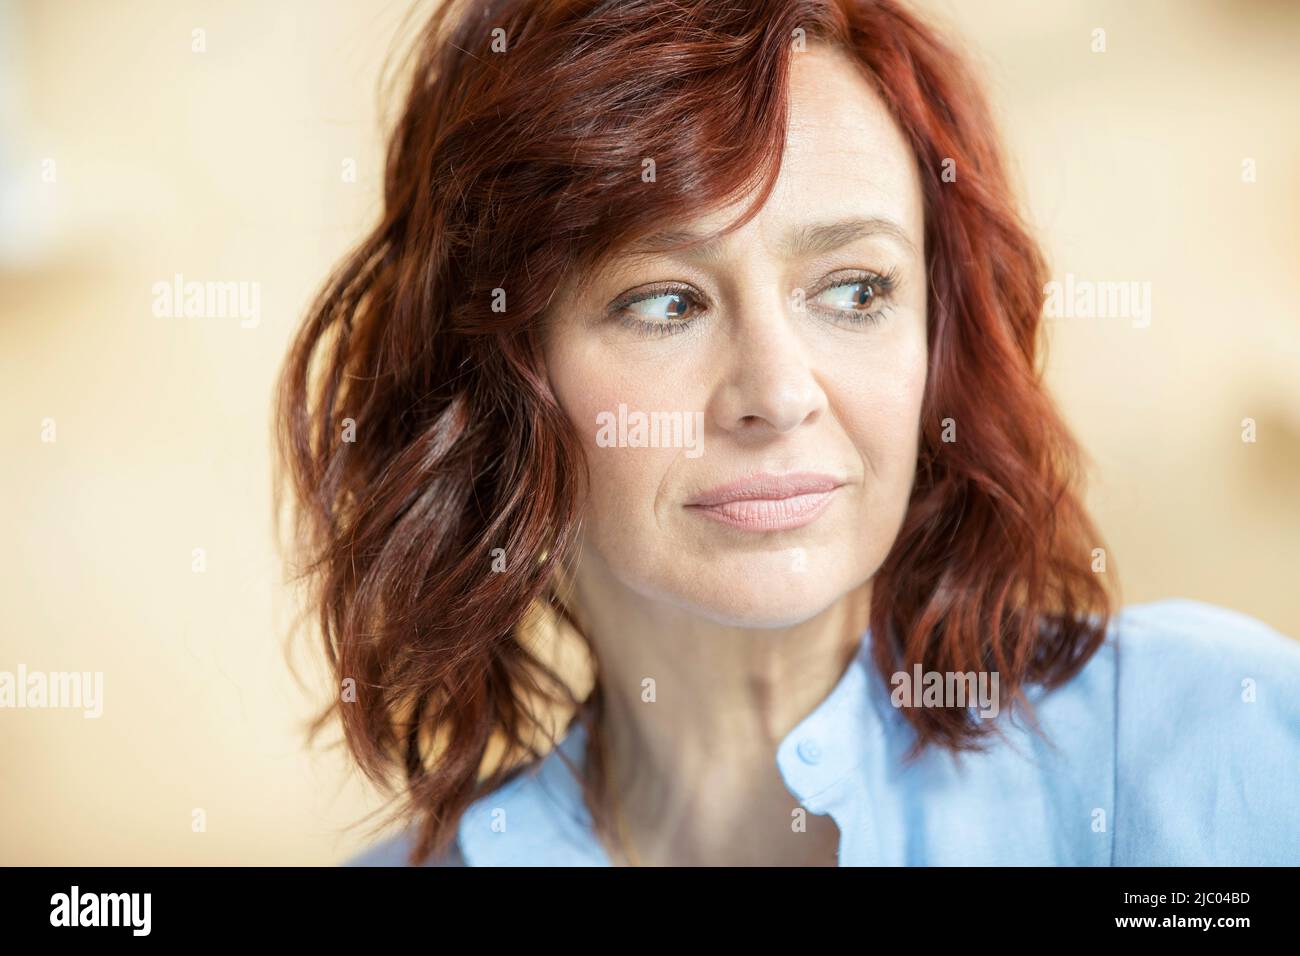 Primo piano ritratto di donna con testa rossa guardando fuori fotocamera. Foto Stock